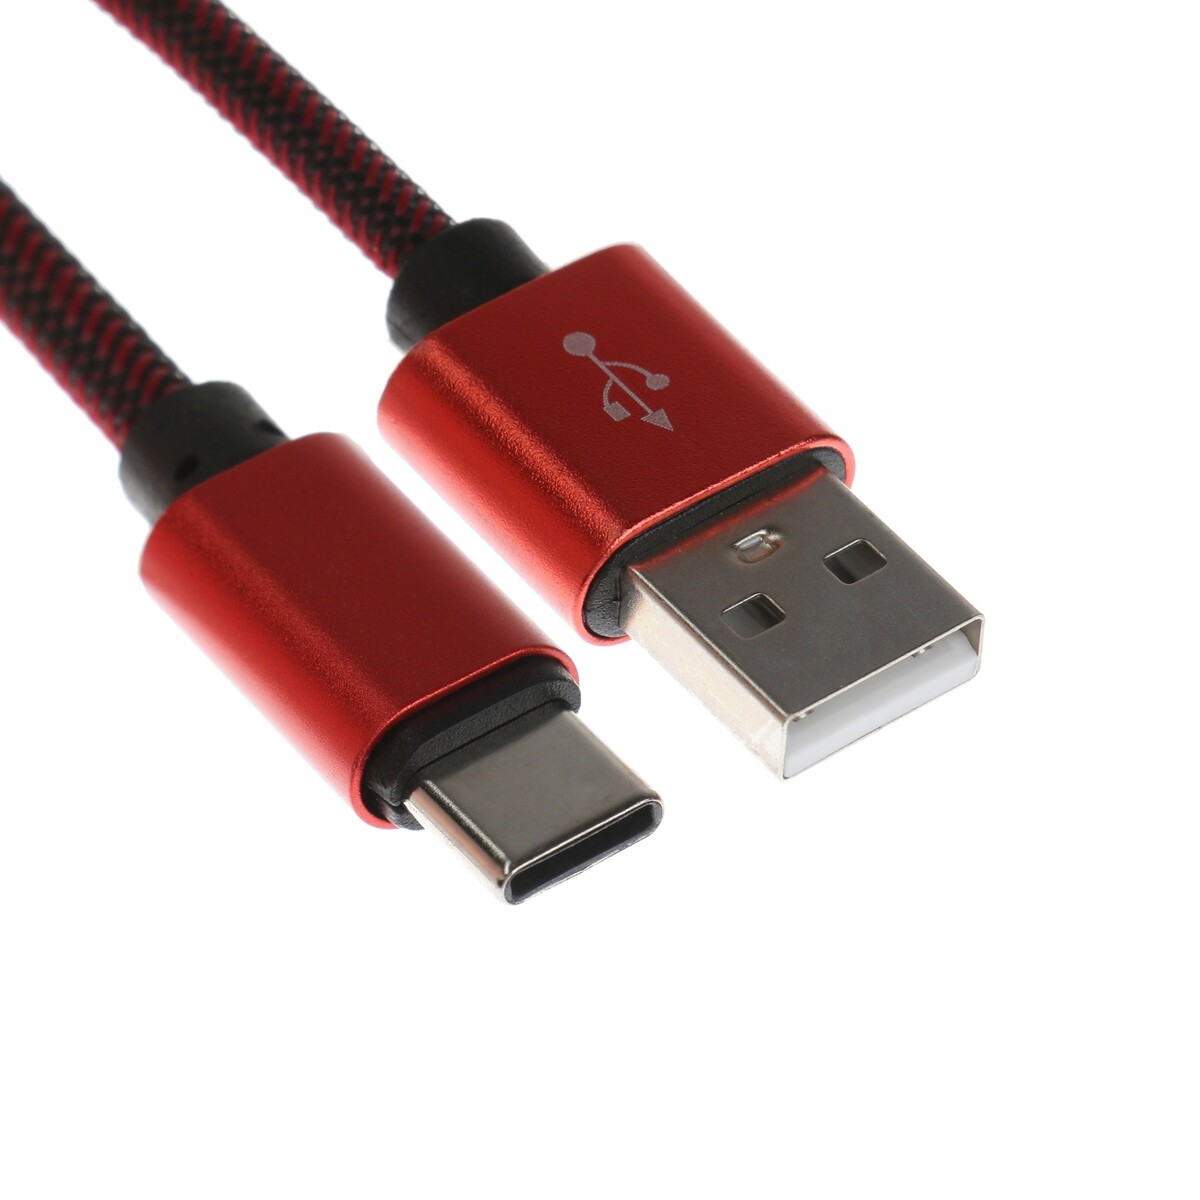 Кабель type- c - usb, 2.1 а, оплетка нейлон, 1 метр, красный дата кабель mobility usb – type c 3а тканевая оплетка красный ут000024535